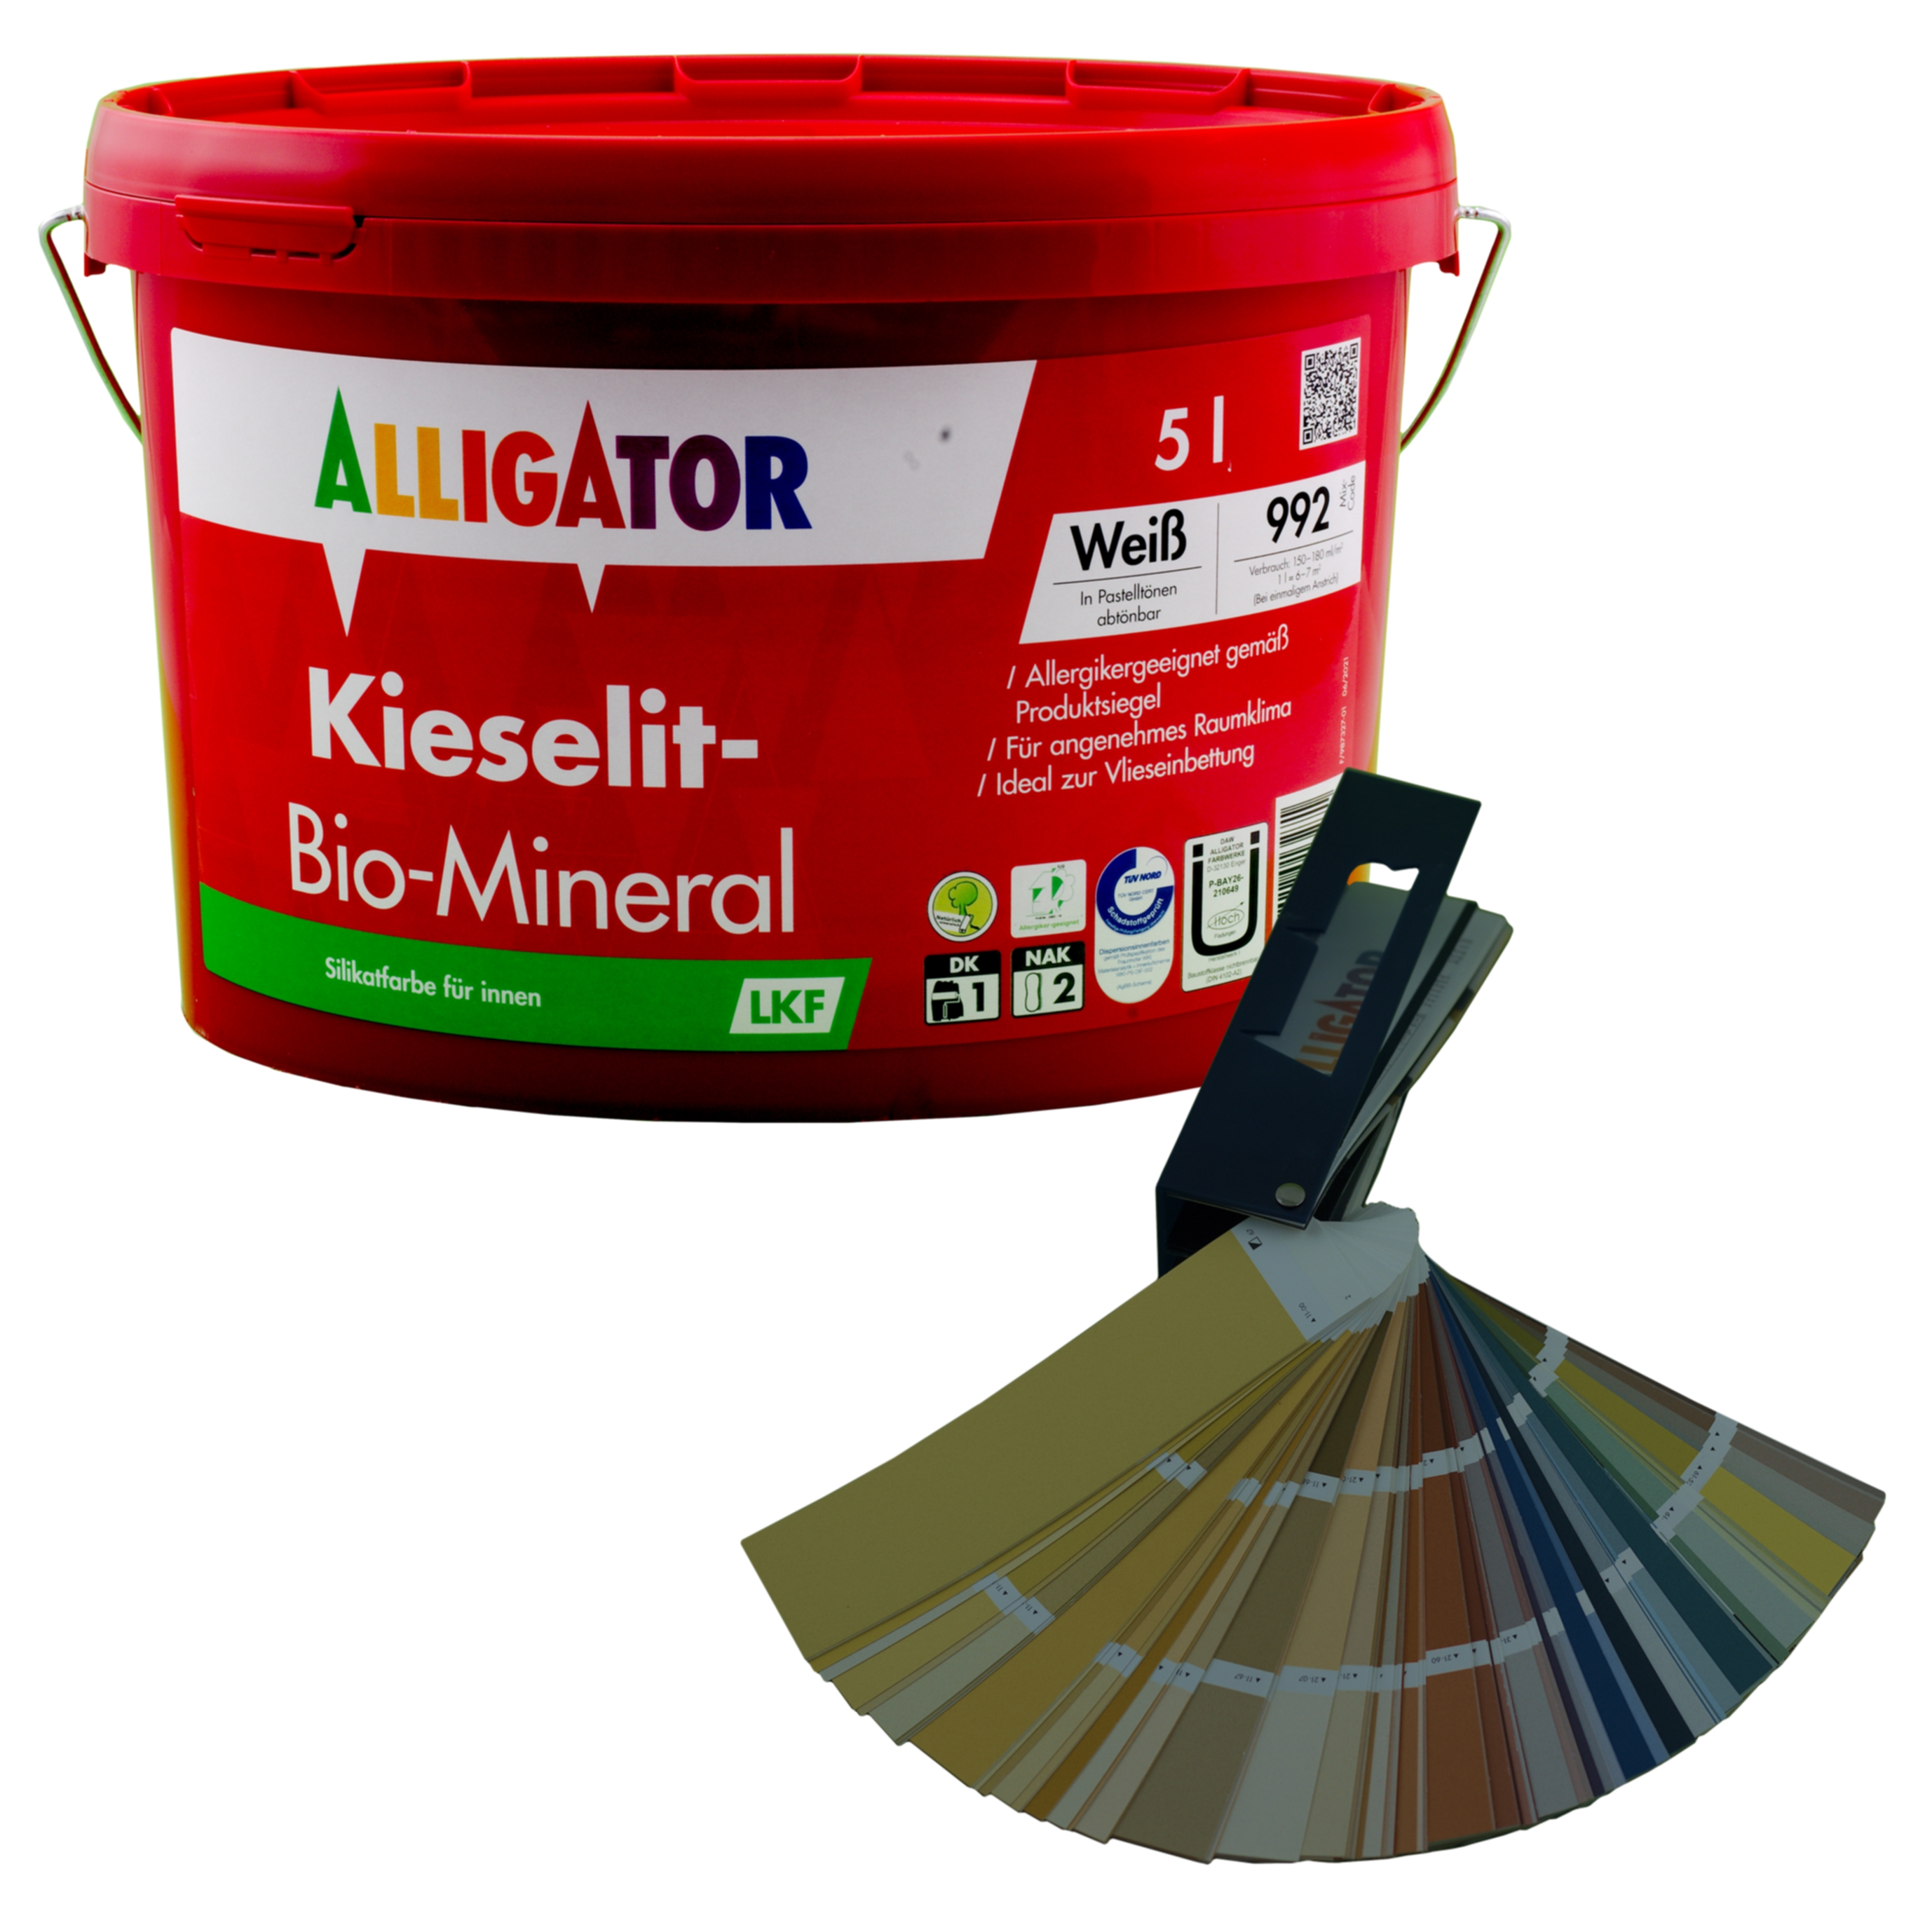 Alligator Kieselit-Bio-Mineral LKF   5,0 ltr. mix  PG 6